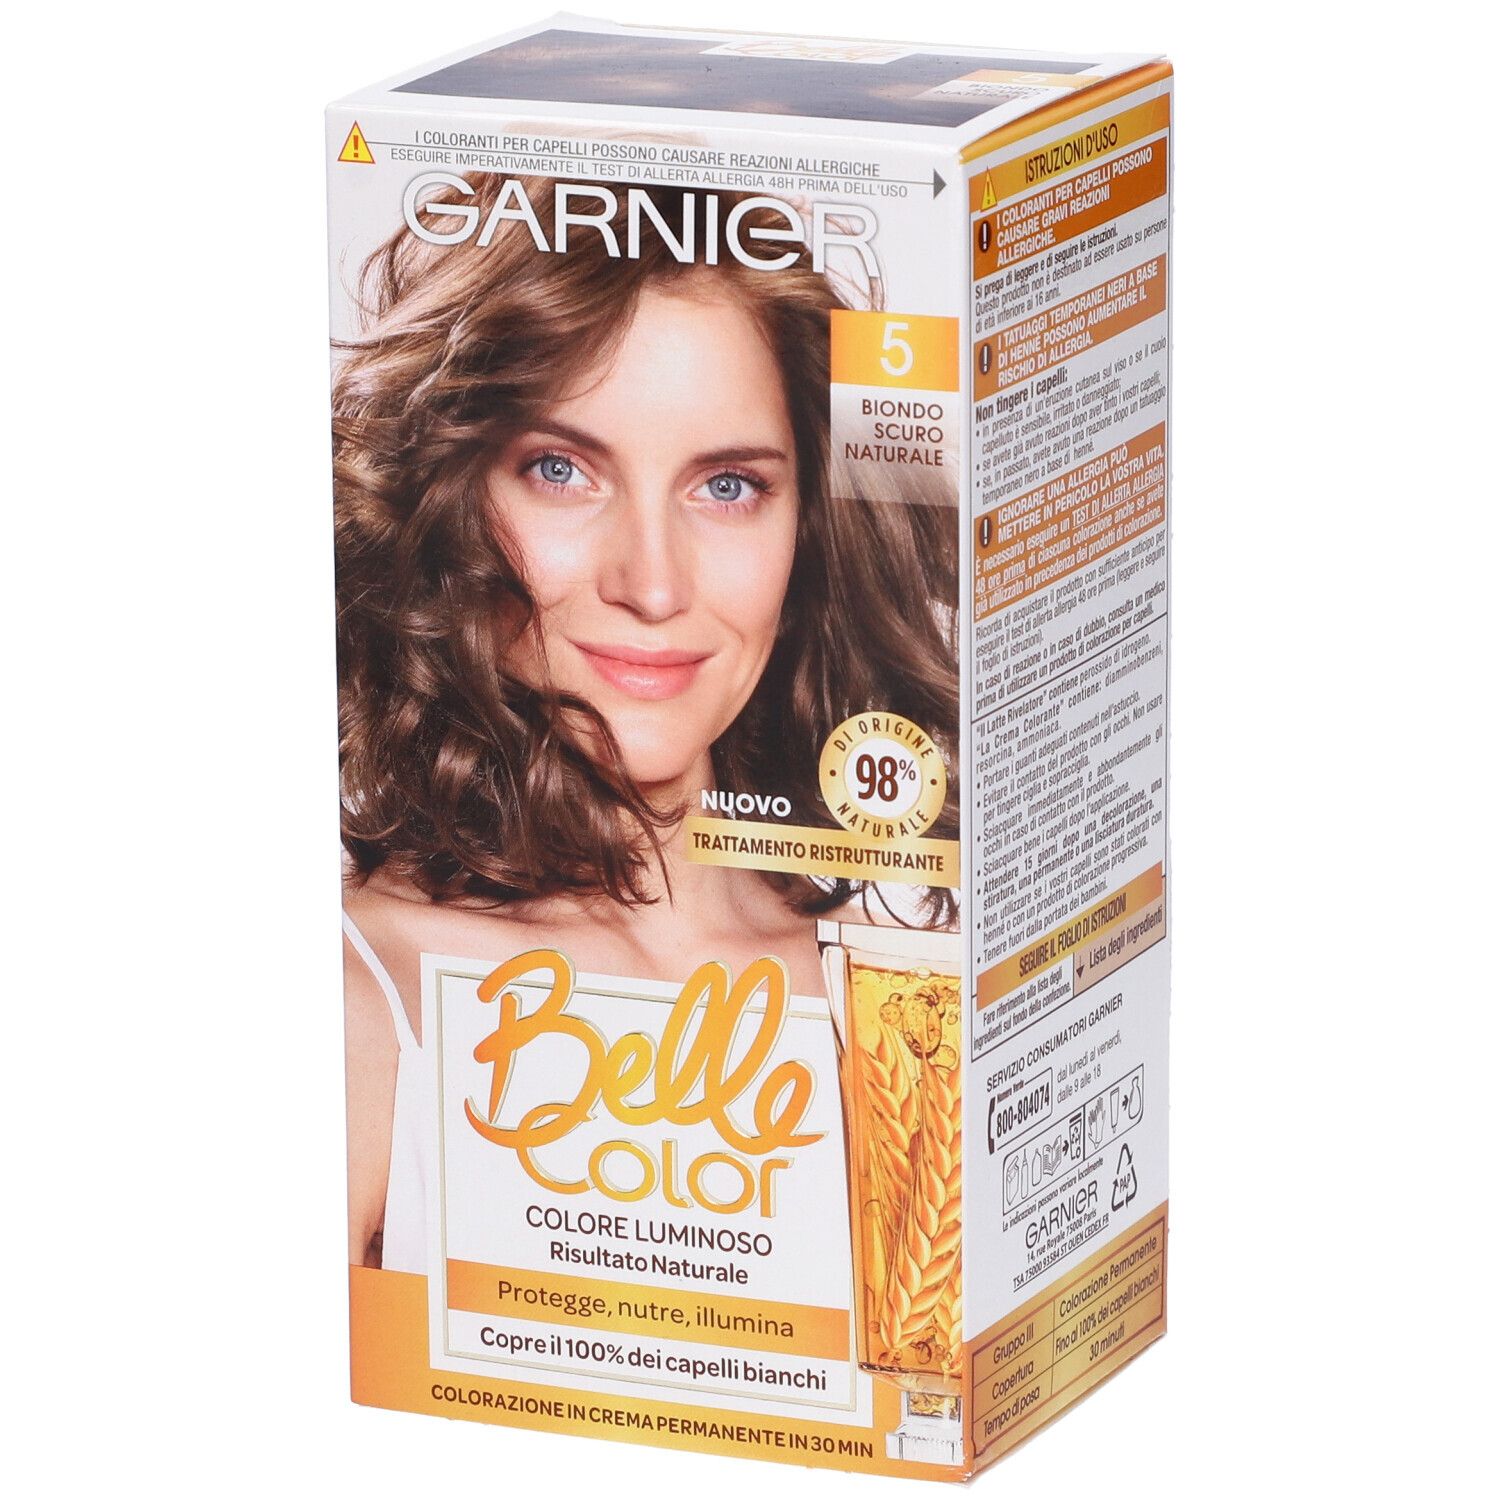 Image of Garnier Tinta Capelli Belle Color, Colore Luminoso e Riflessi Naturali, Copre il 100% dei capelli bianchi, Biondo Scuro Naturale